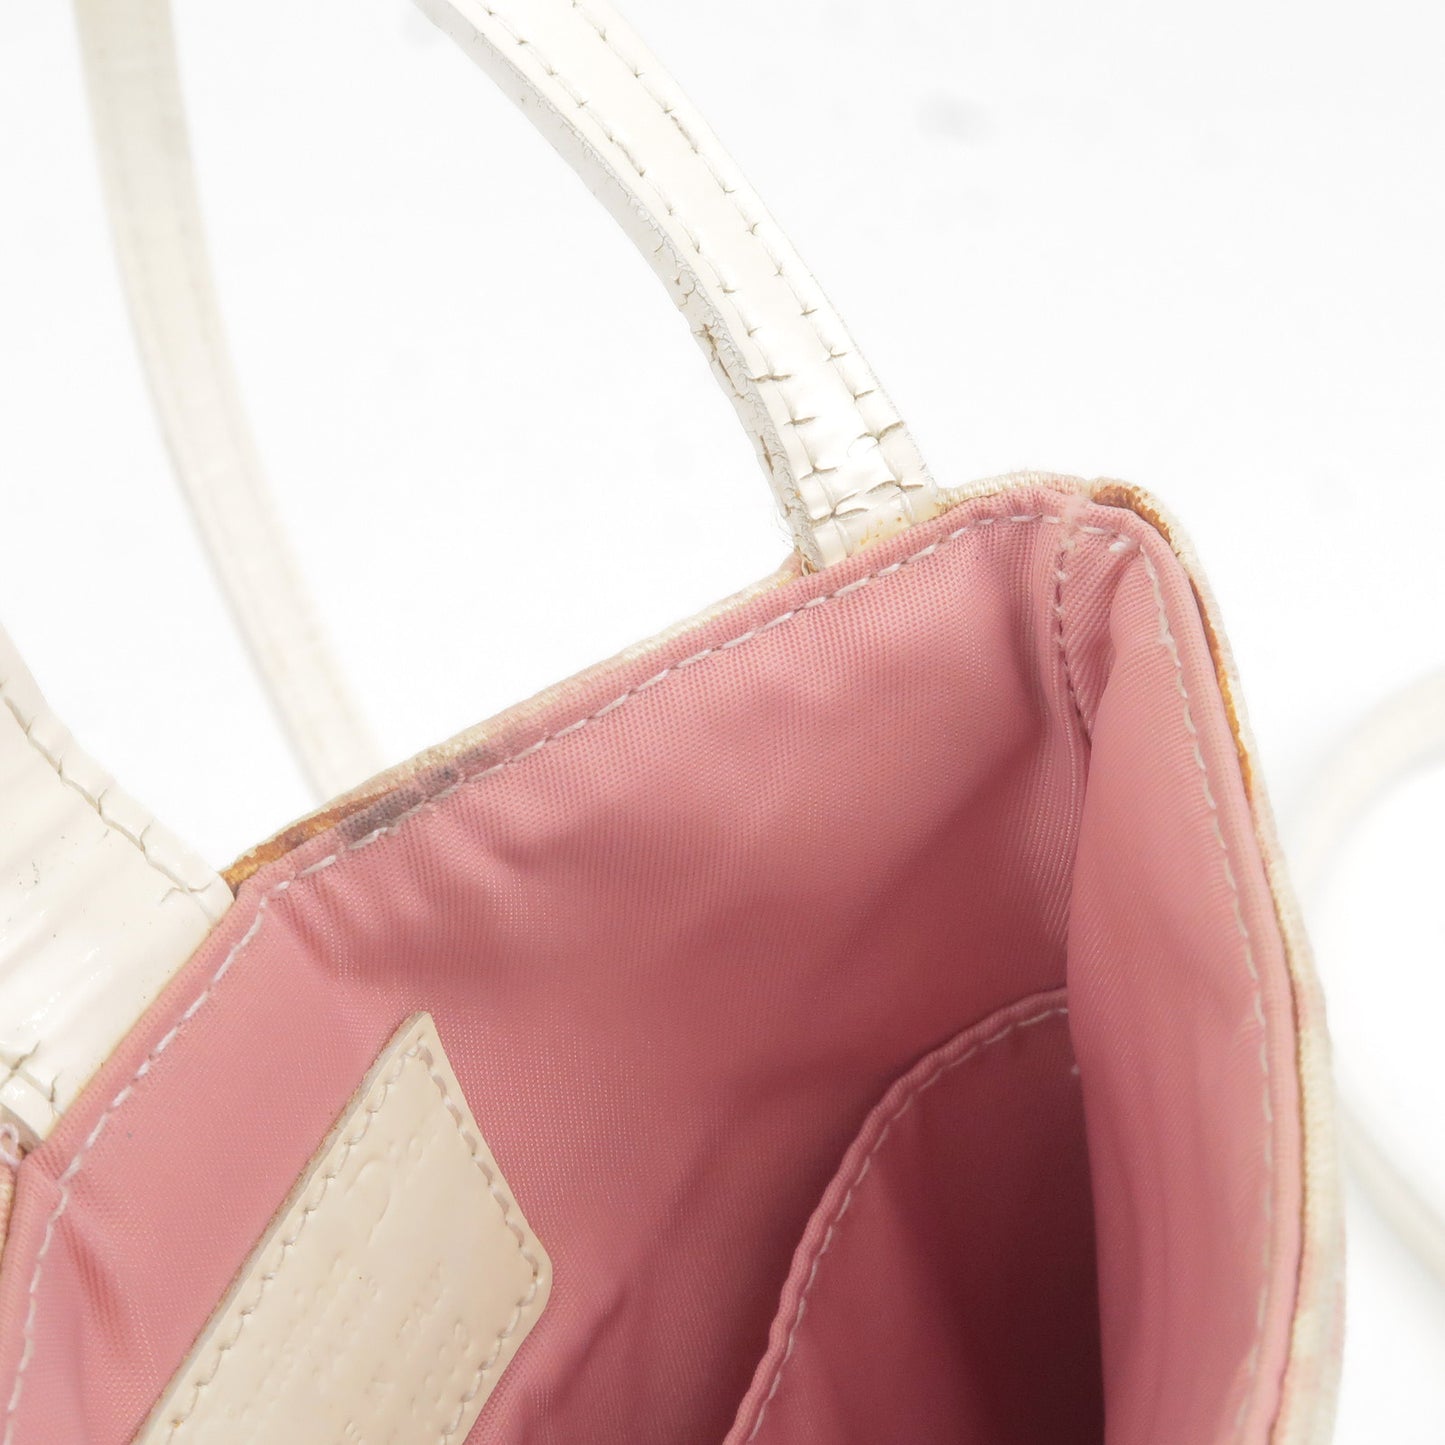 Christian Dior Trotter PVC Enamel Shoulder Bag Pouch Pink